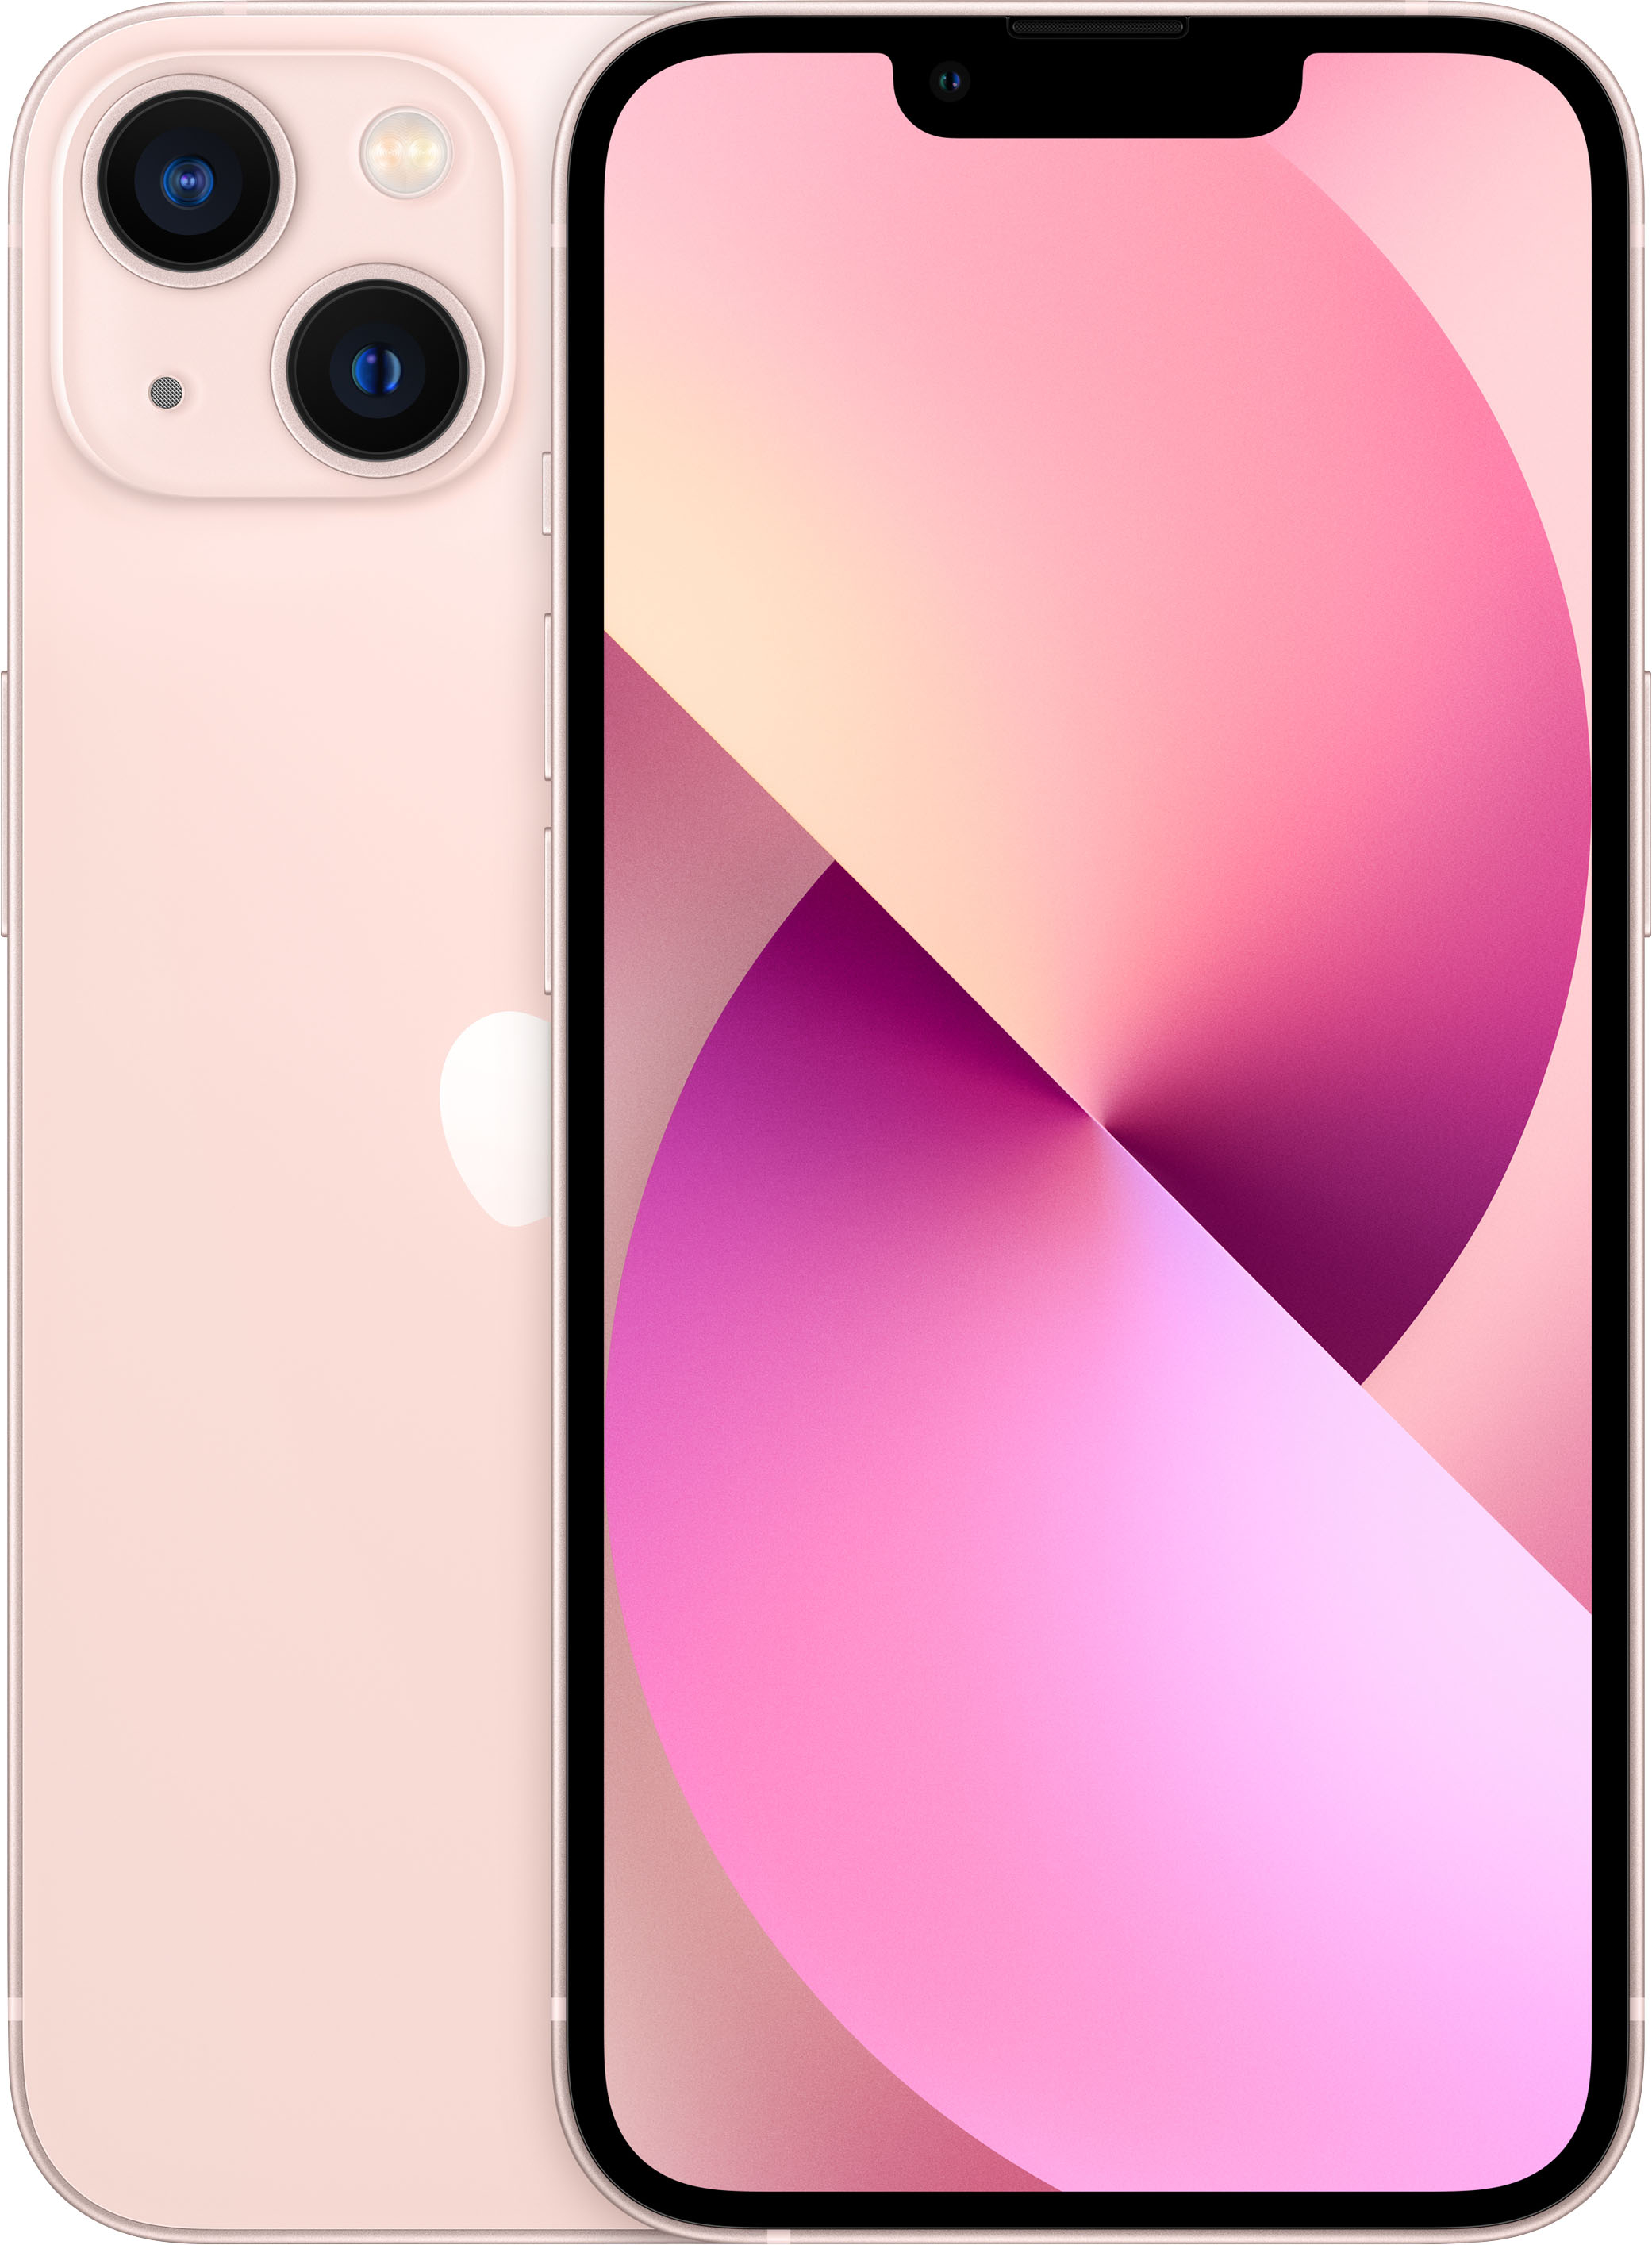 Apple iphone pink lightweight break remix total science break